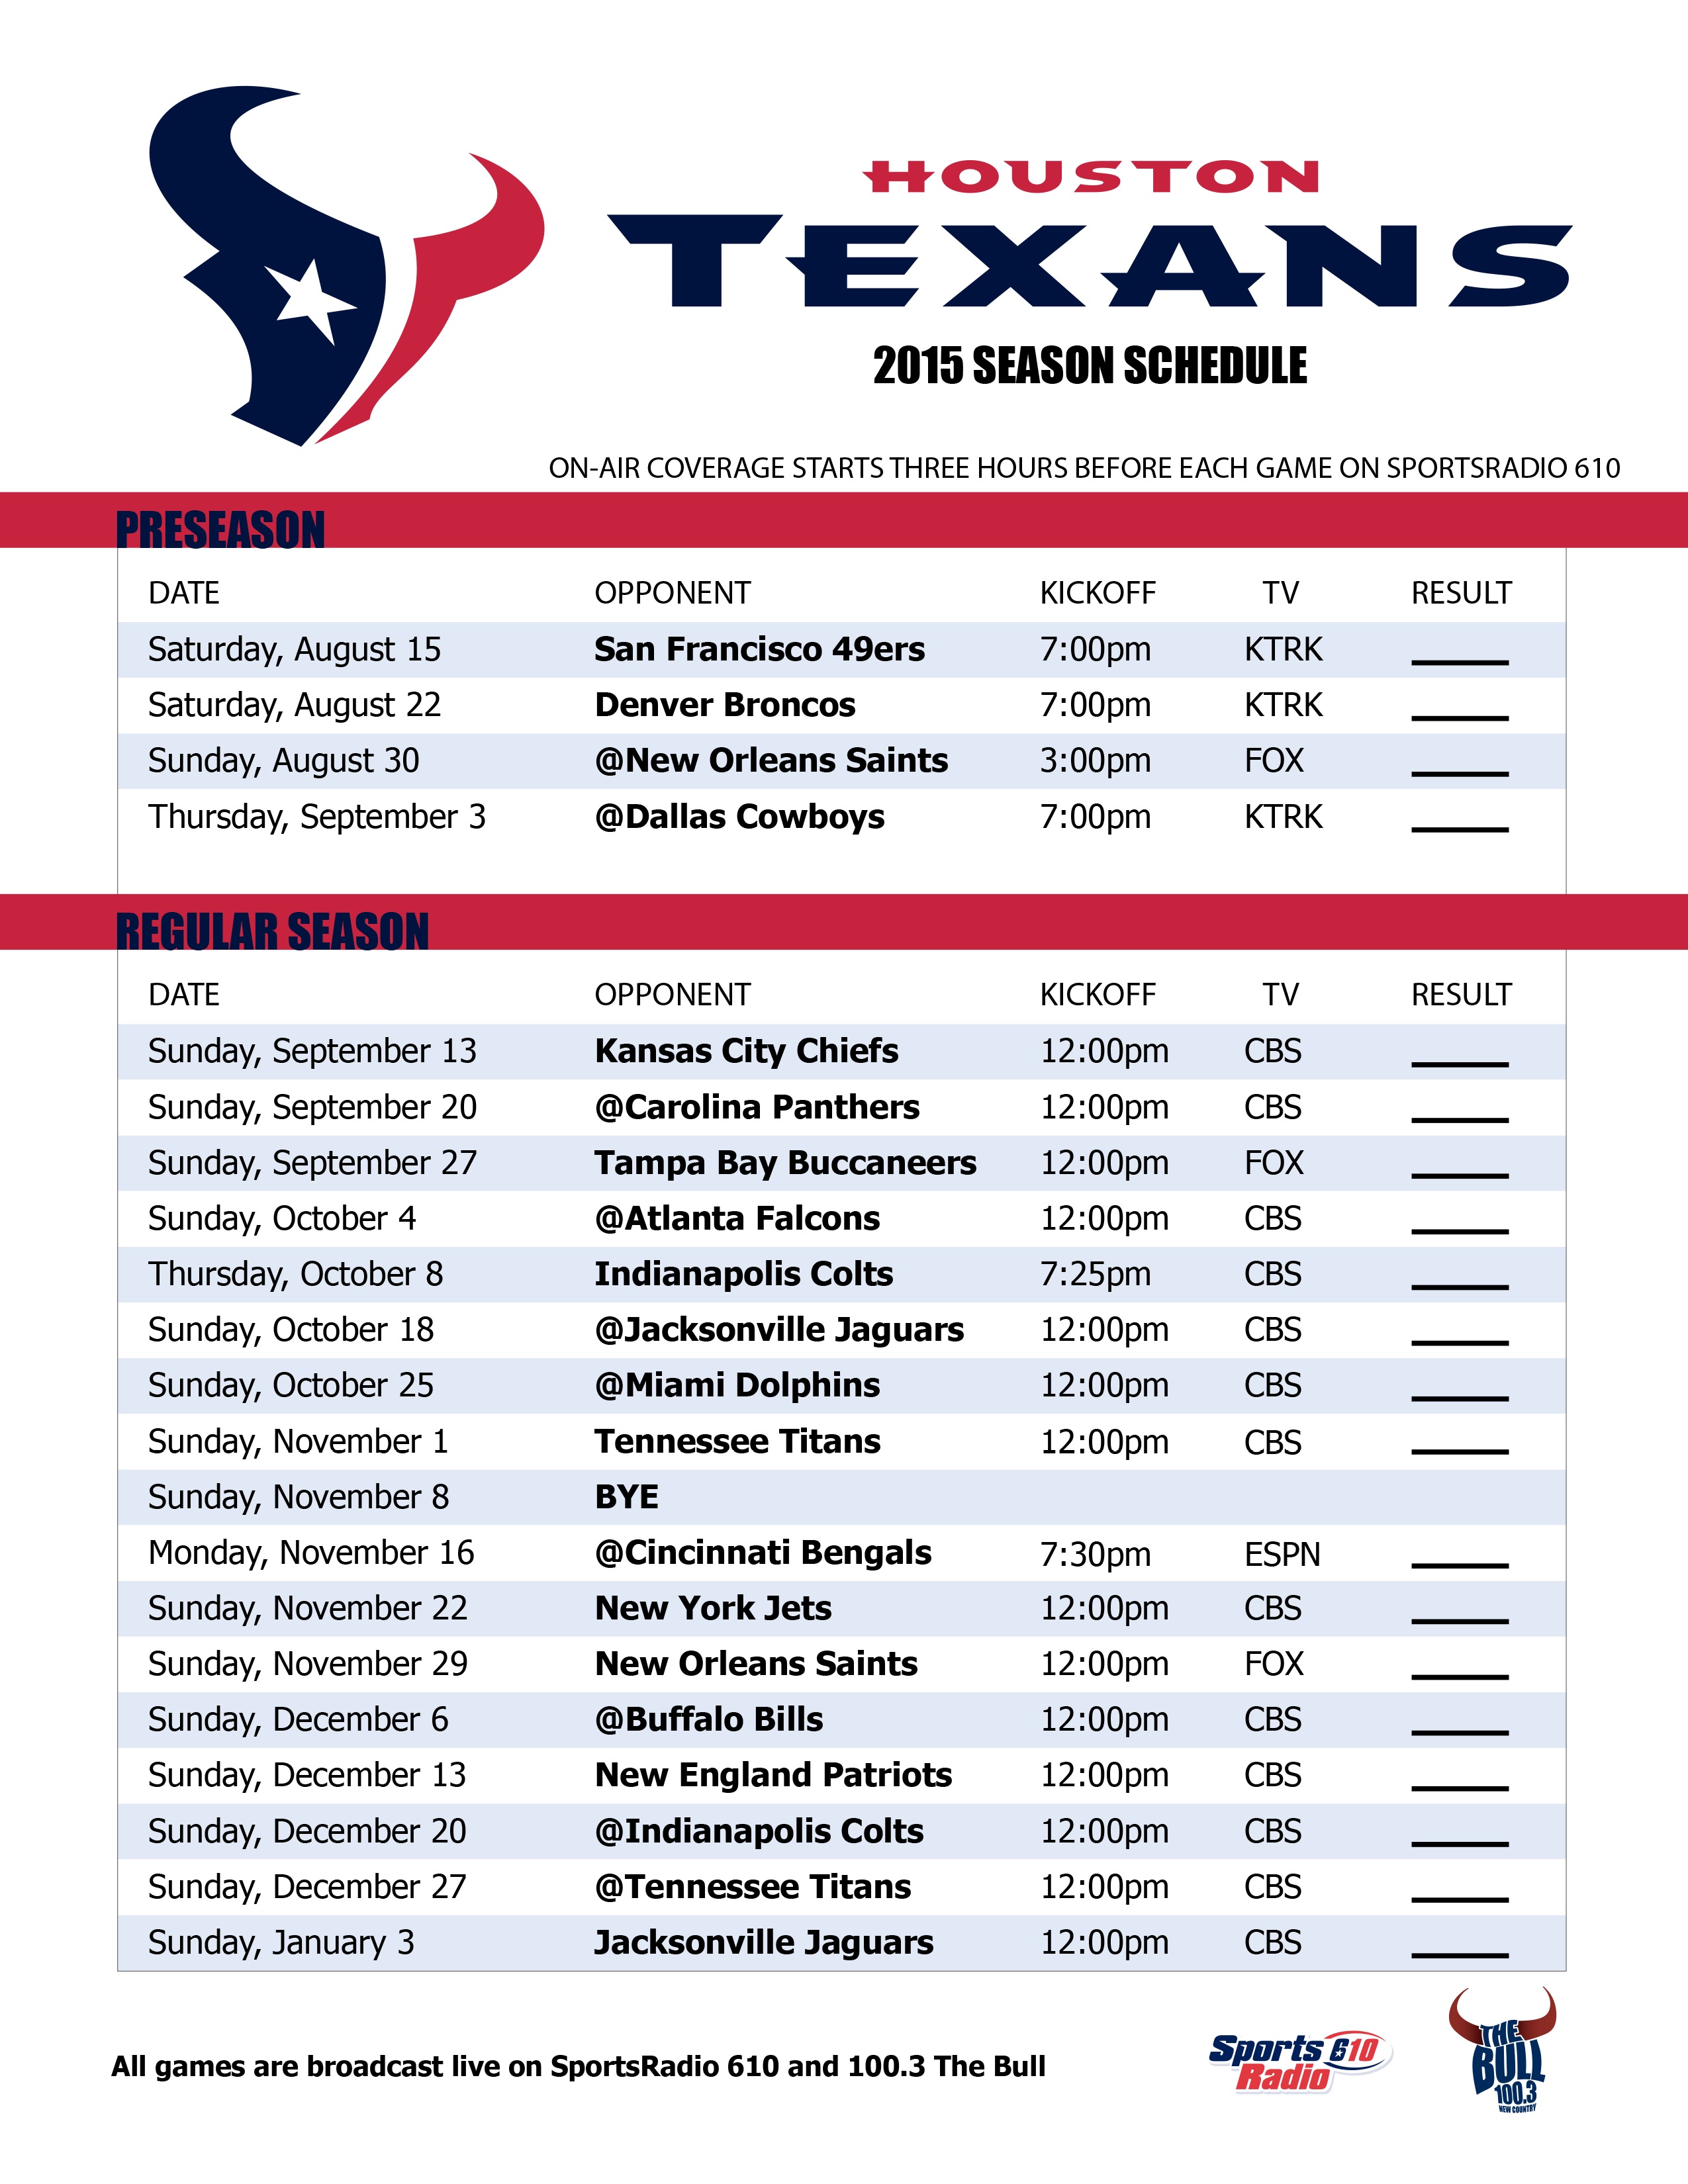 Houston Texans 2015 Schedule Wallpaper - WallpaperSafari